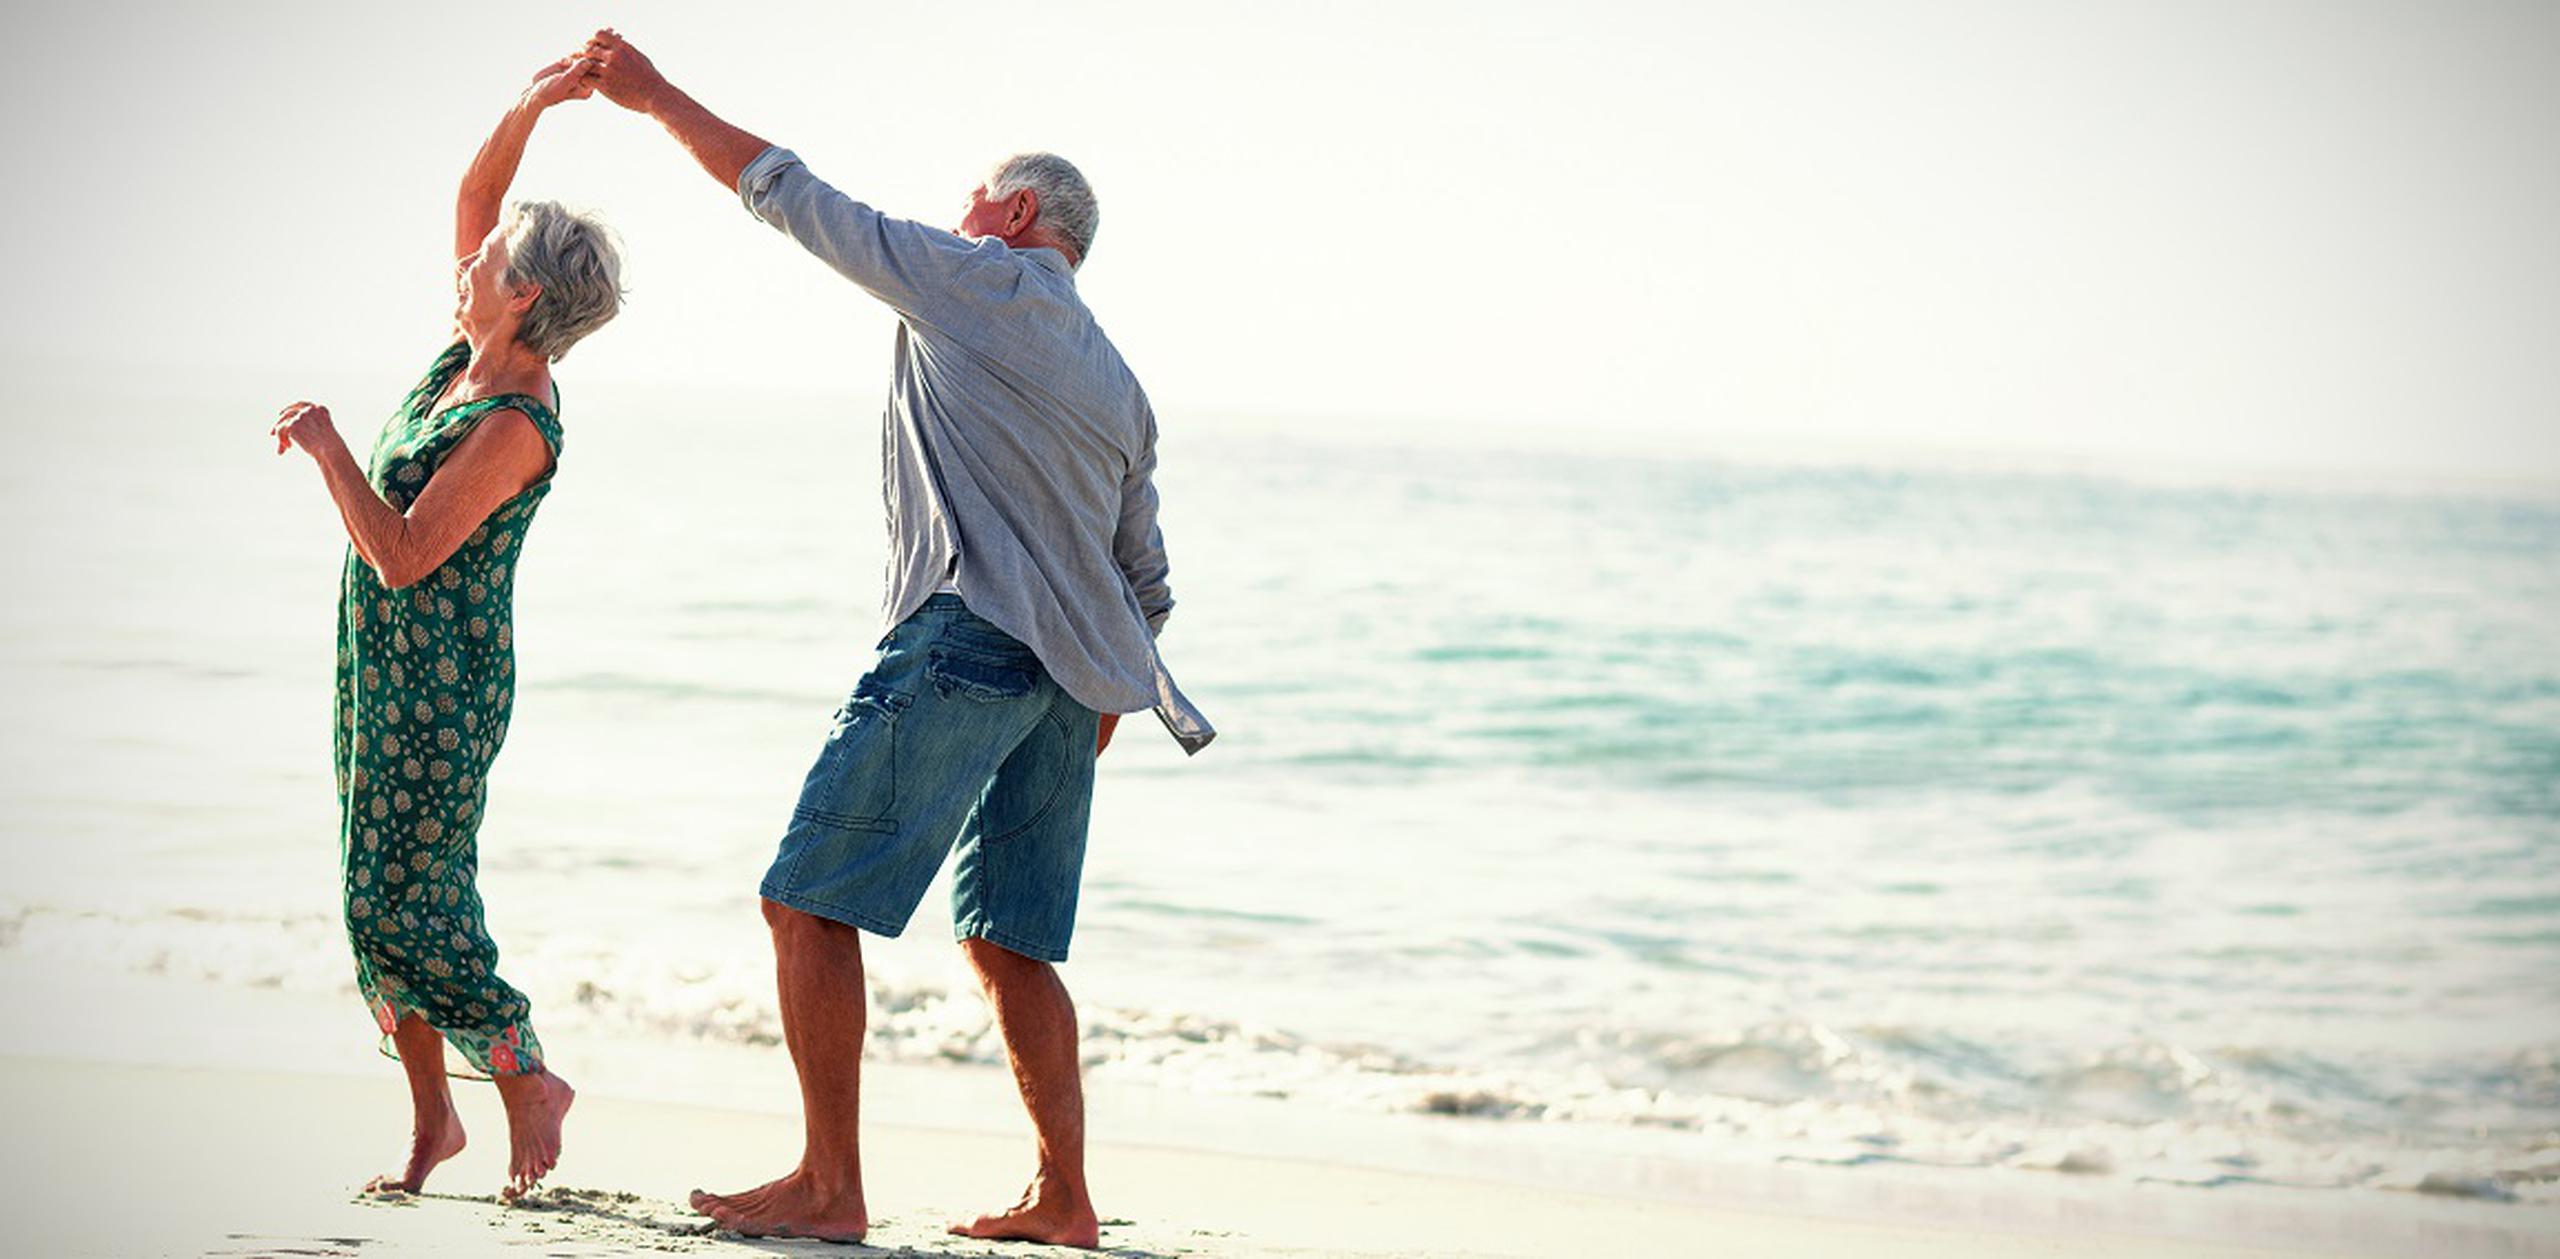 Las relaciones son la pieza clave para el proceso de envejecimiento, felicidad y salud de las personas. (Shutterstock)